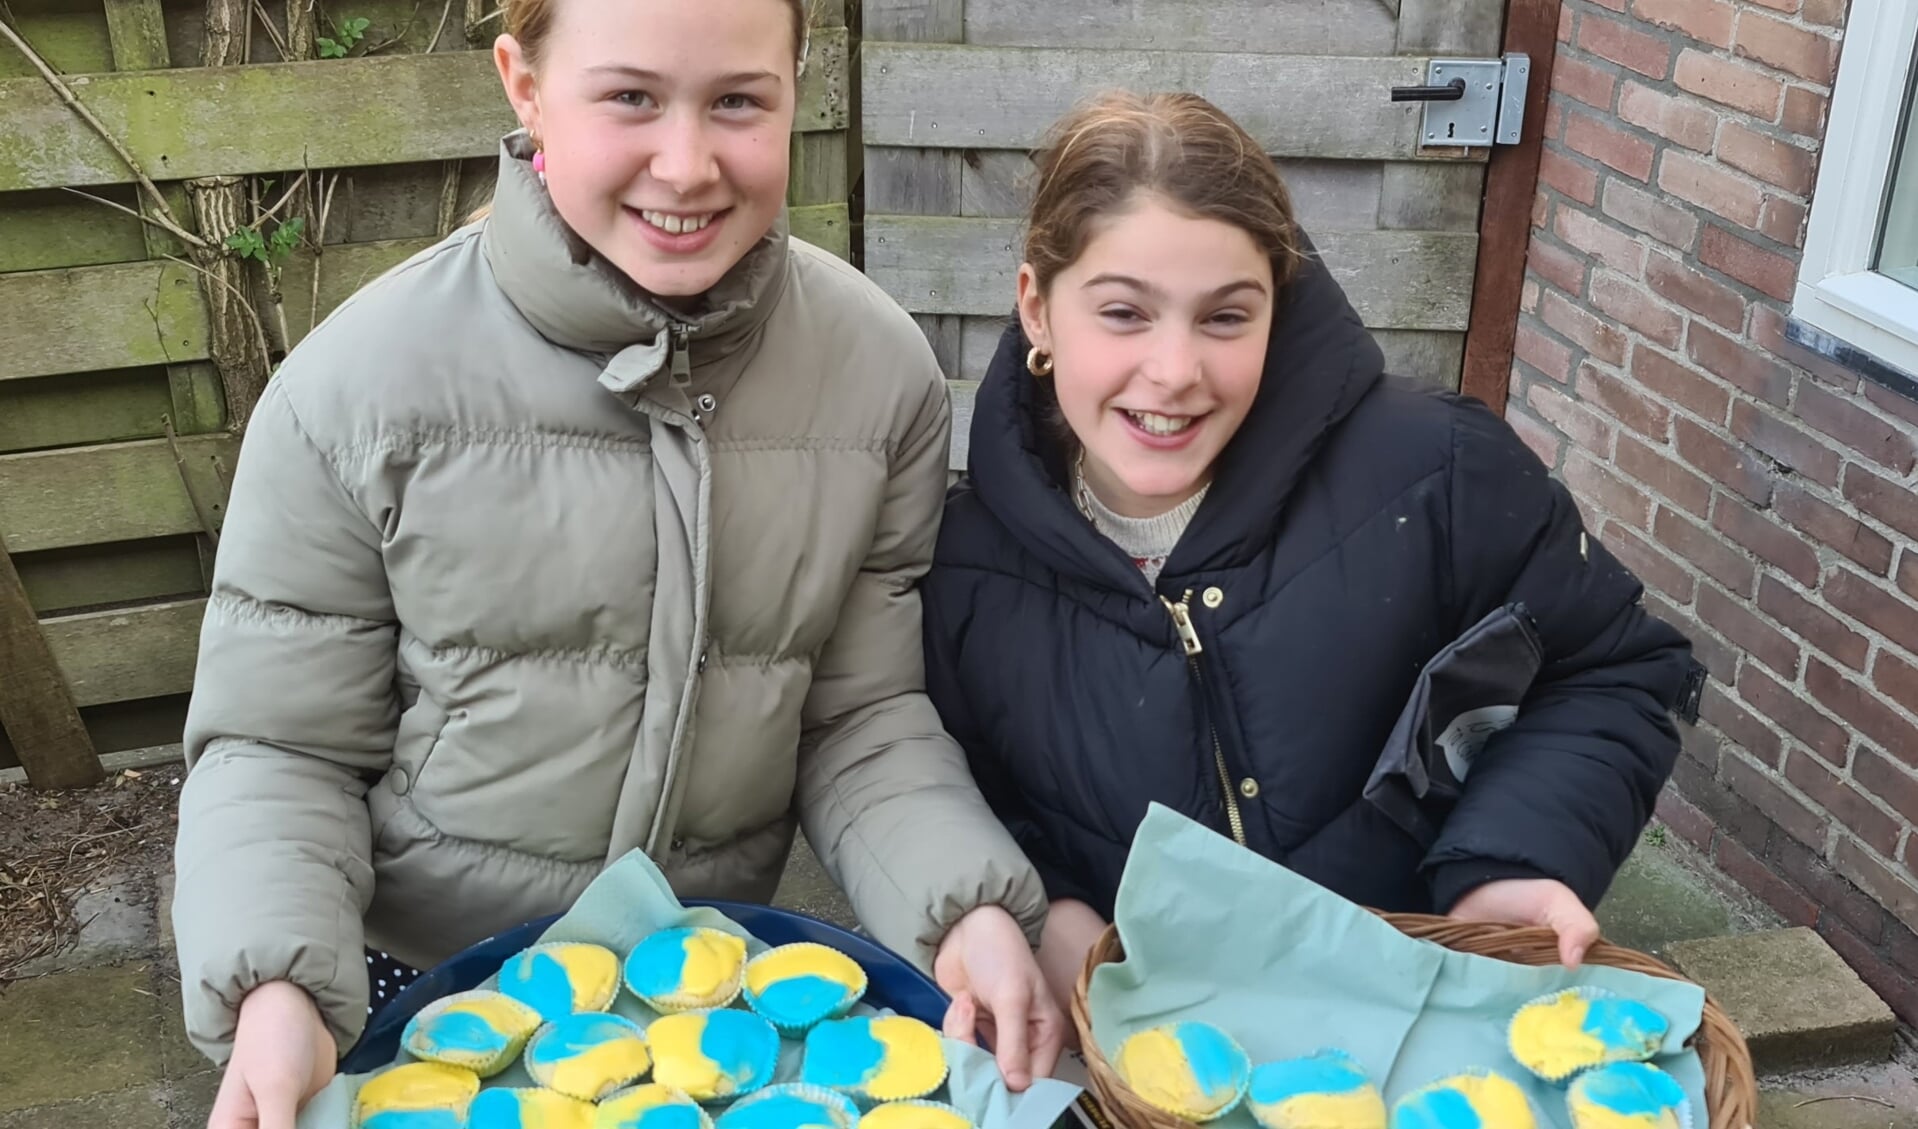 Emmily en Madelief met de cupcakes in kleuren van Ukrainse vlag